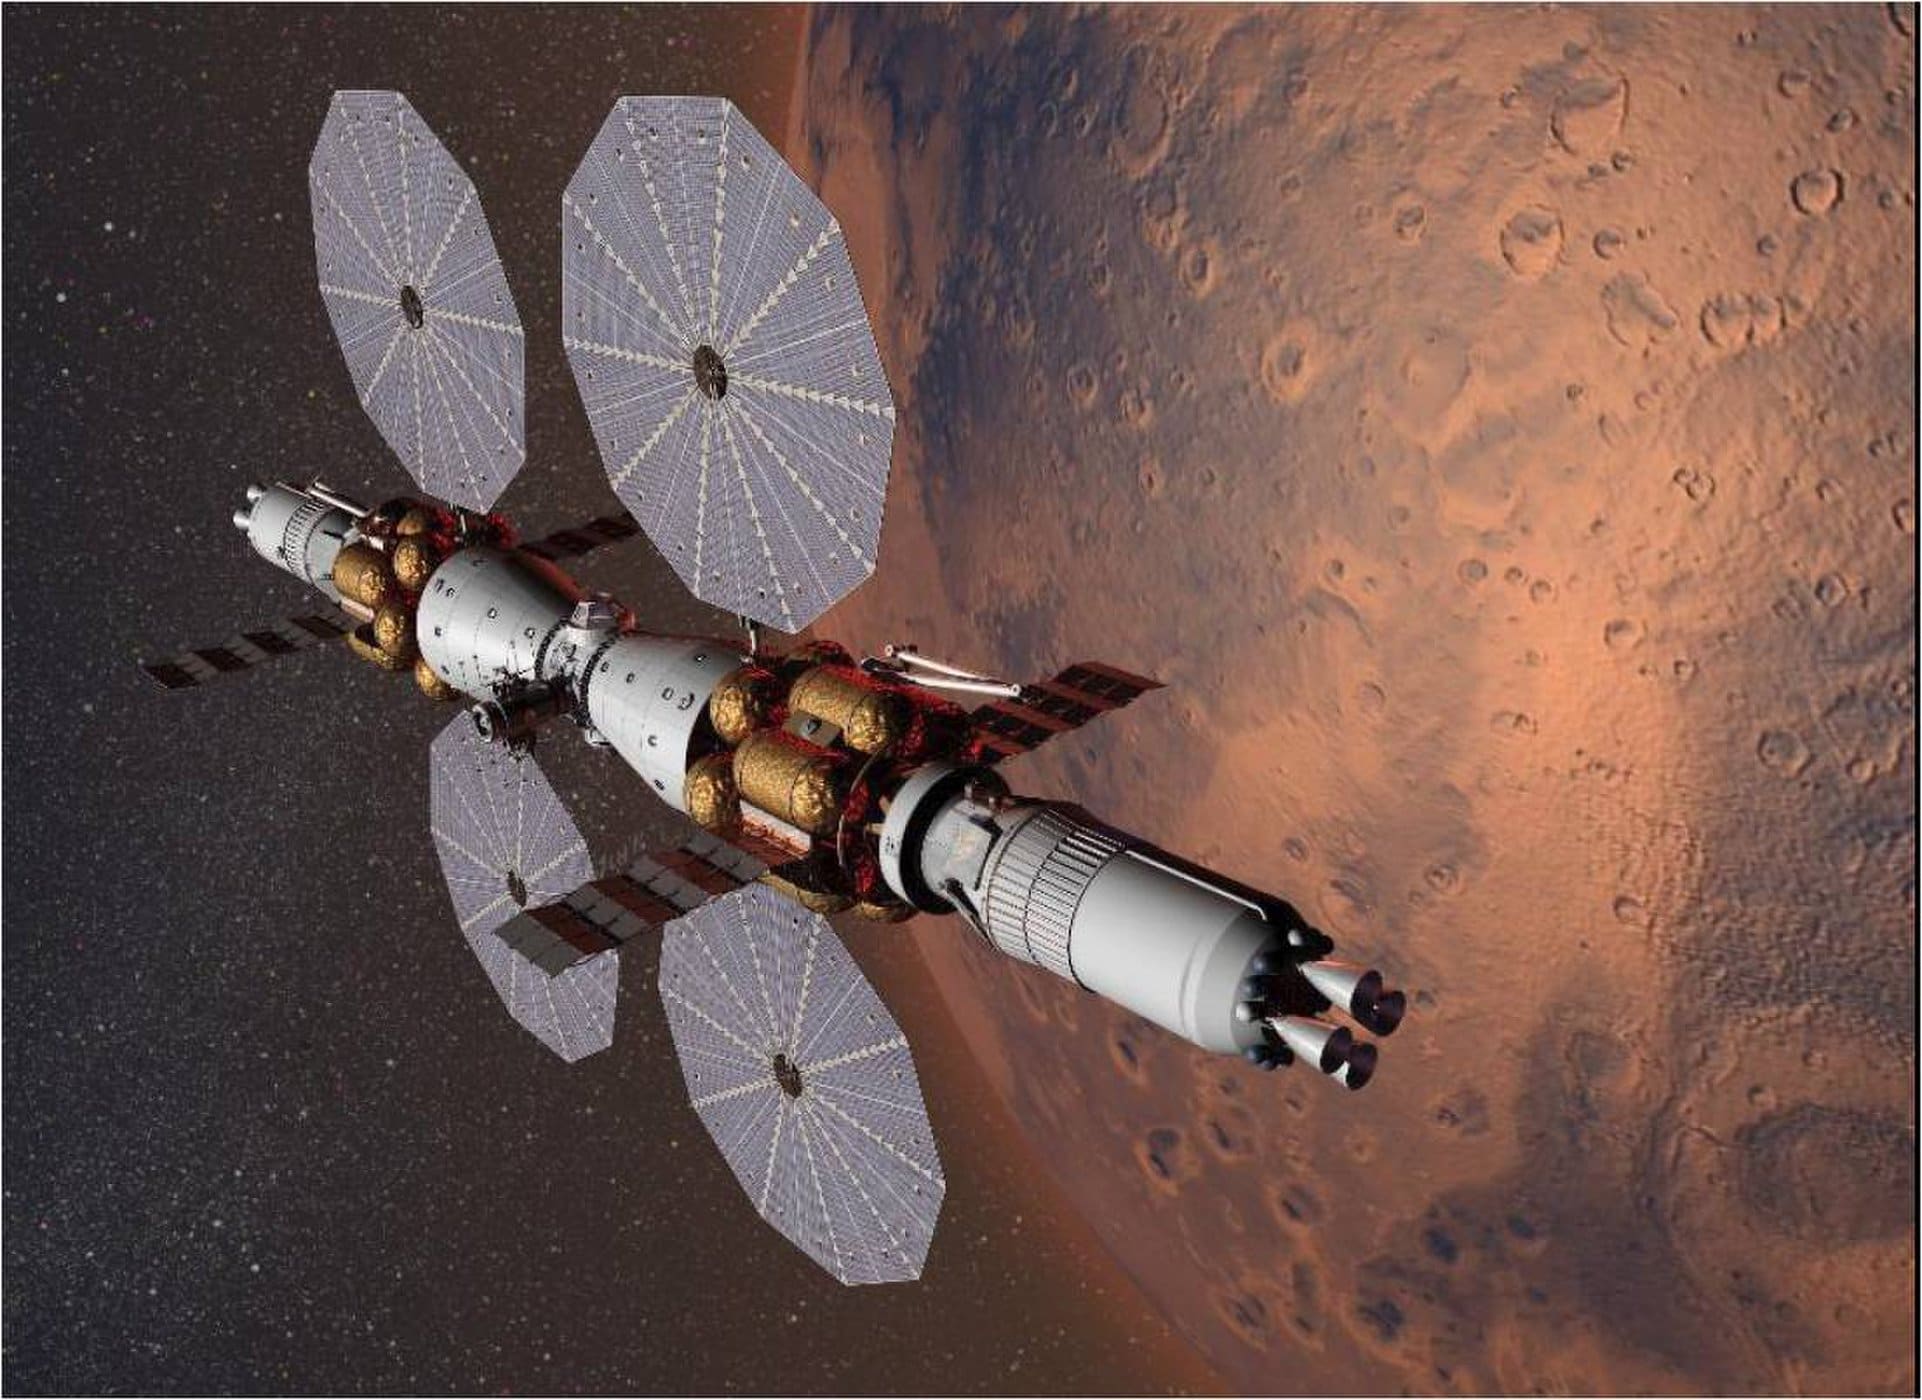 Mars Base Camp, una estación espacial para Marte